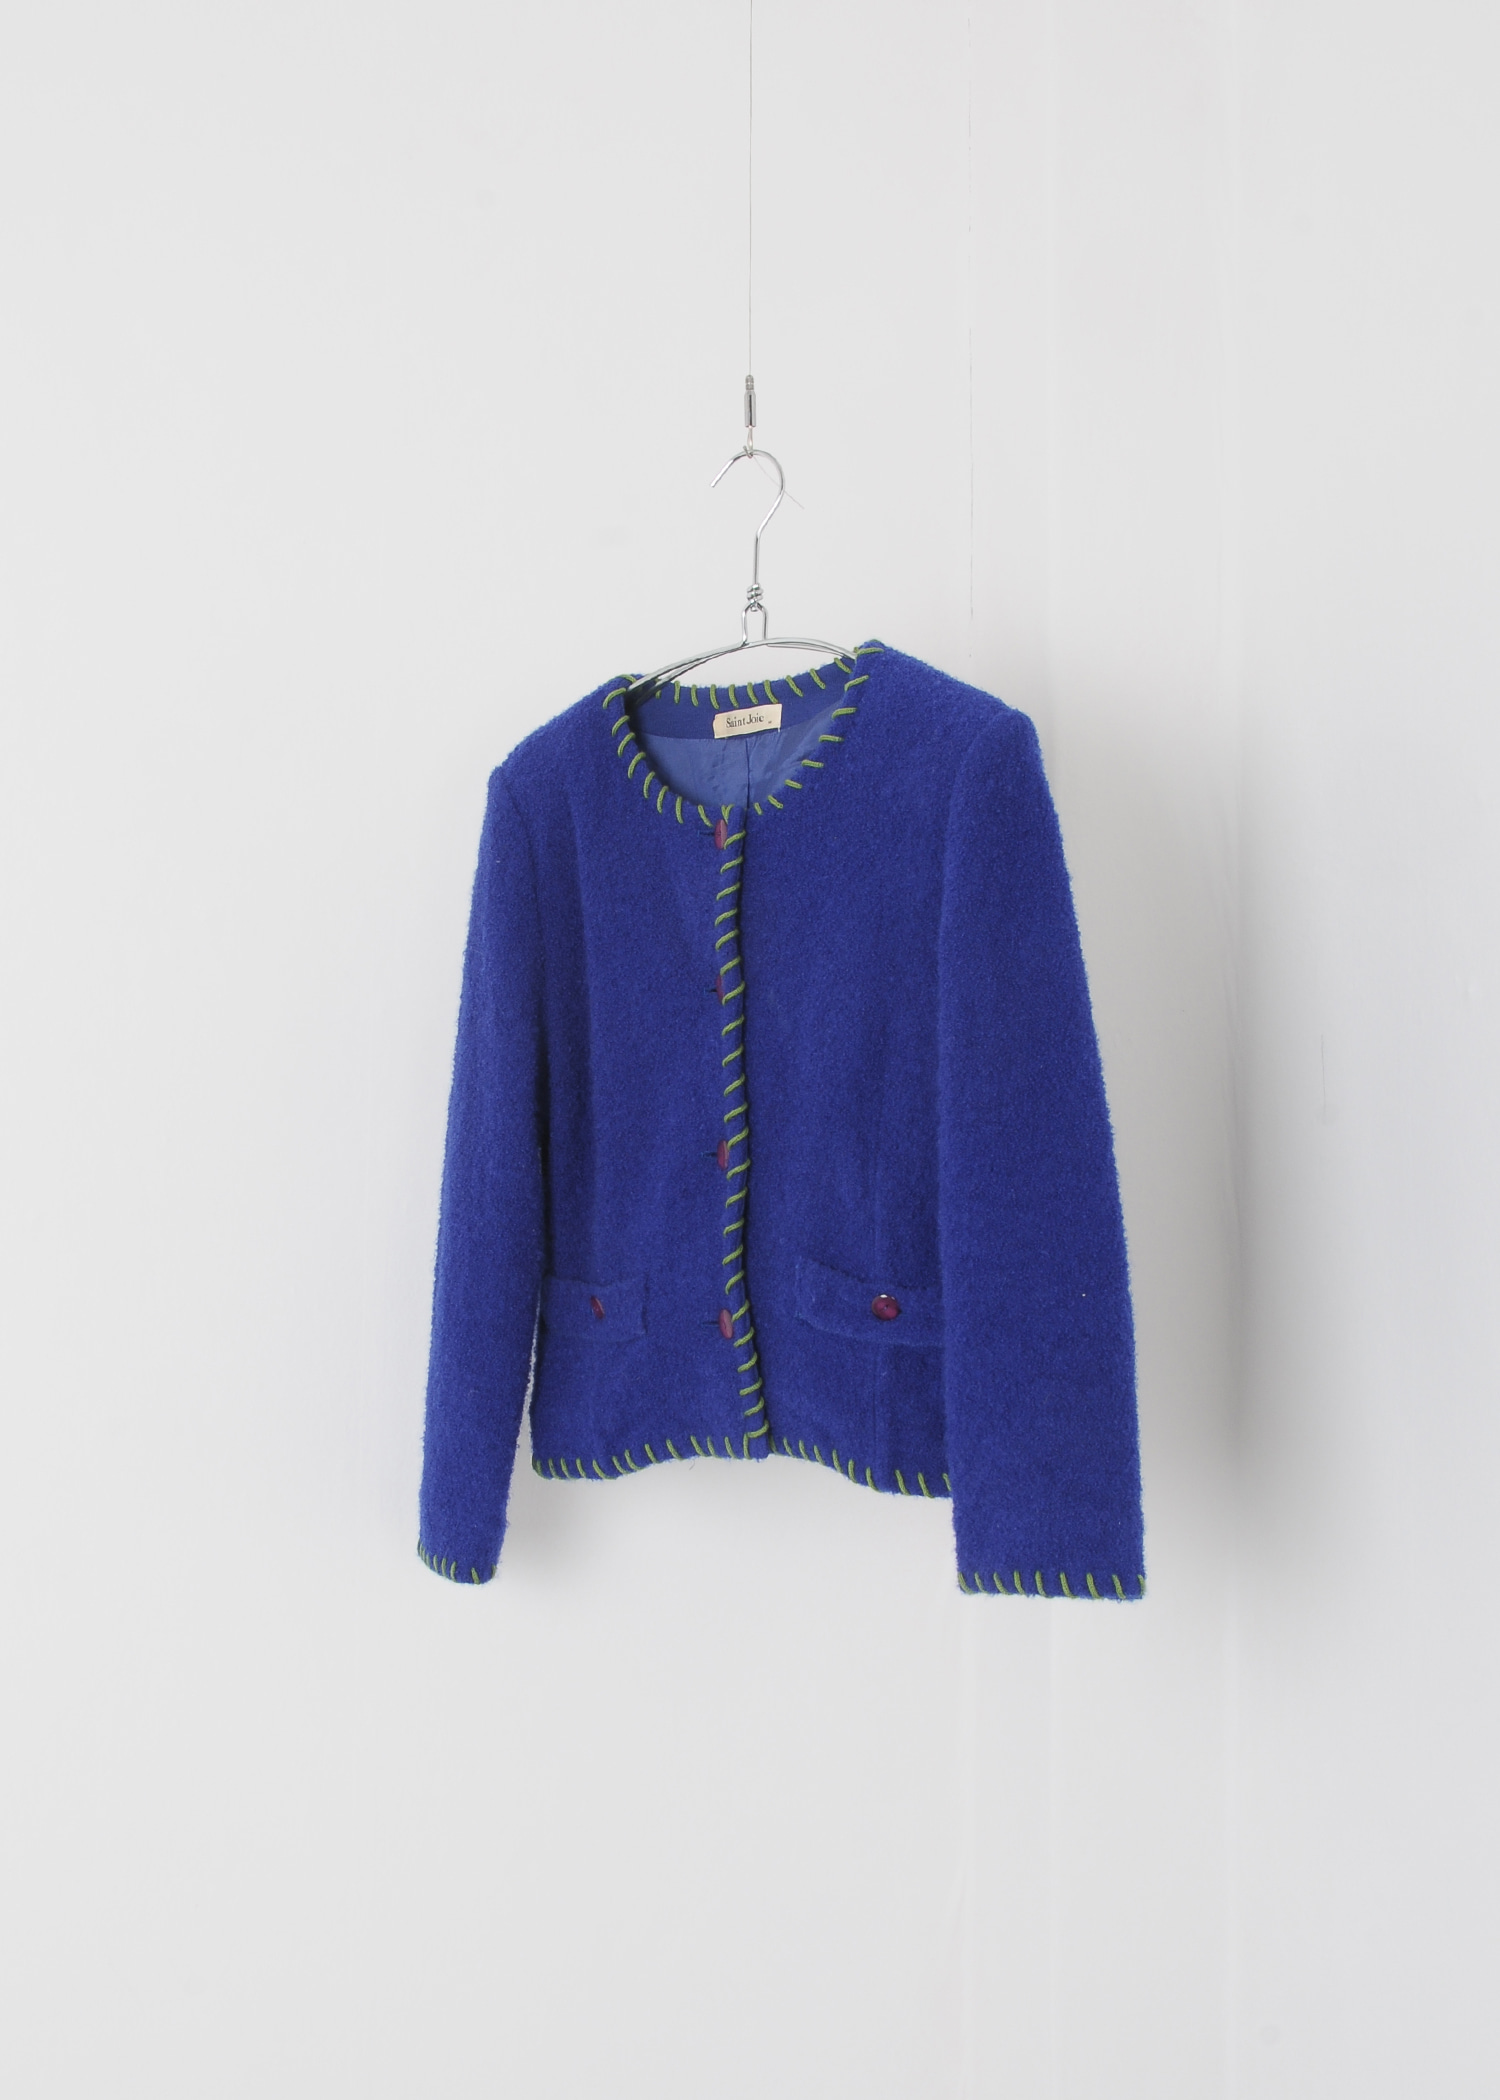 select vintage : round wool jacket